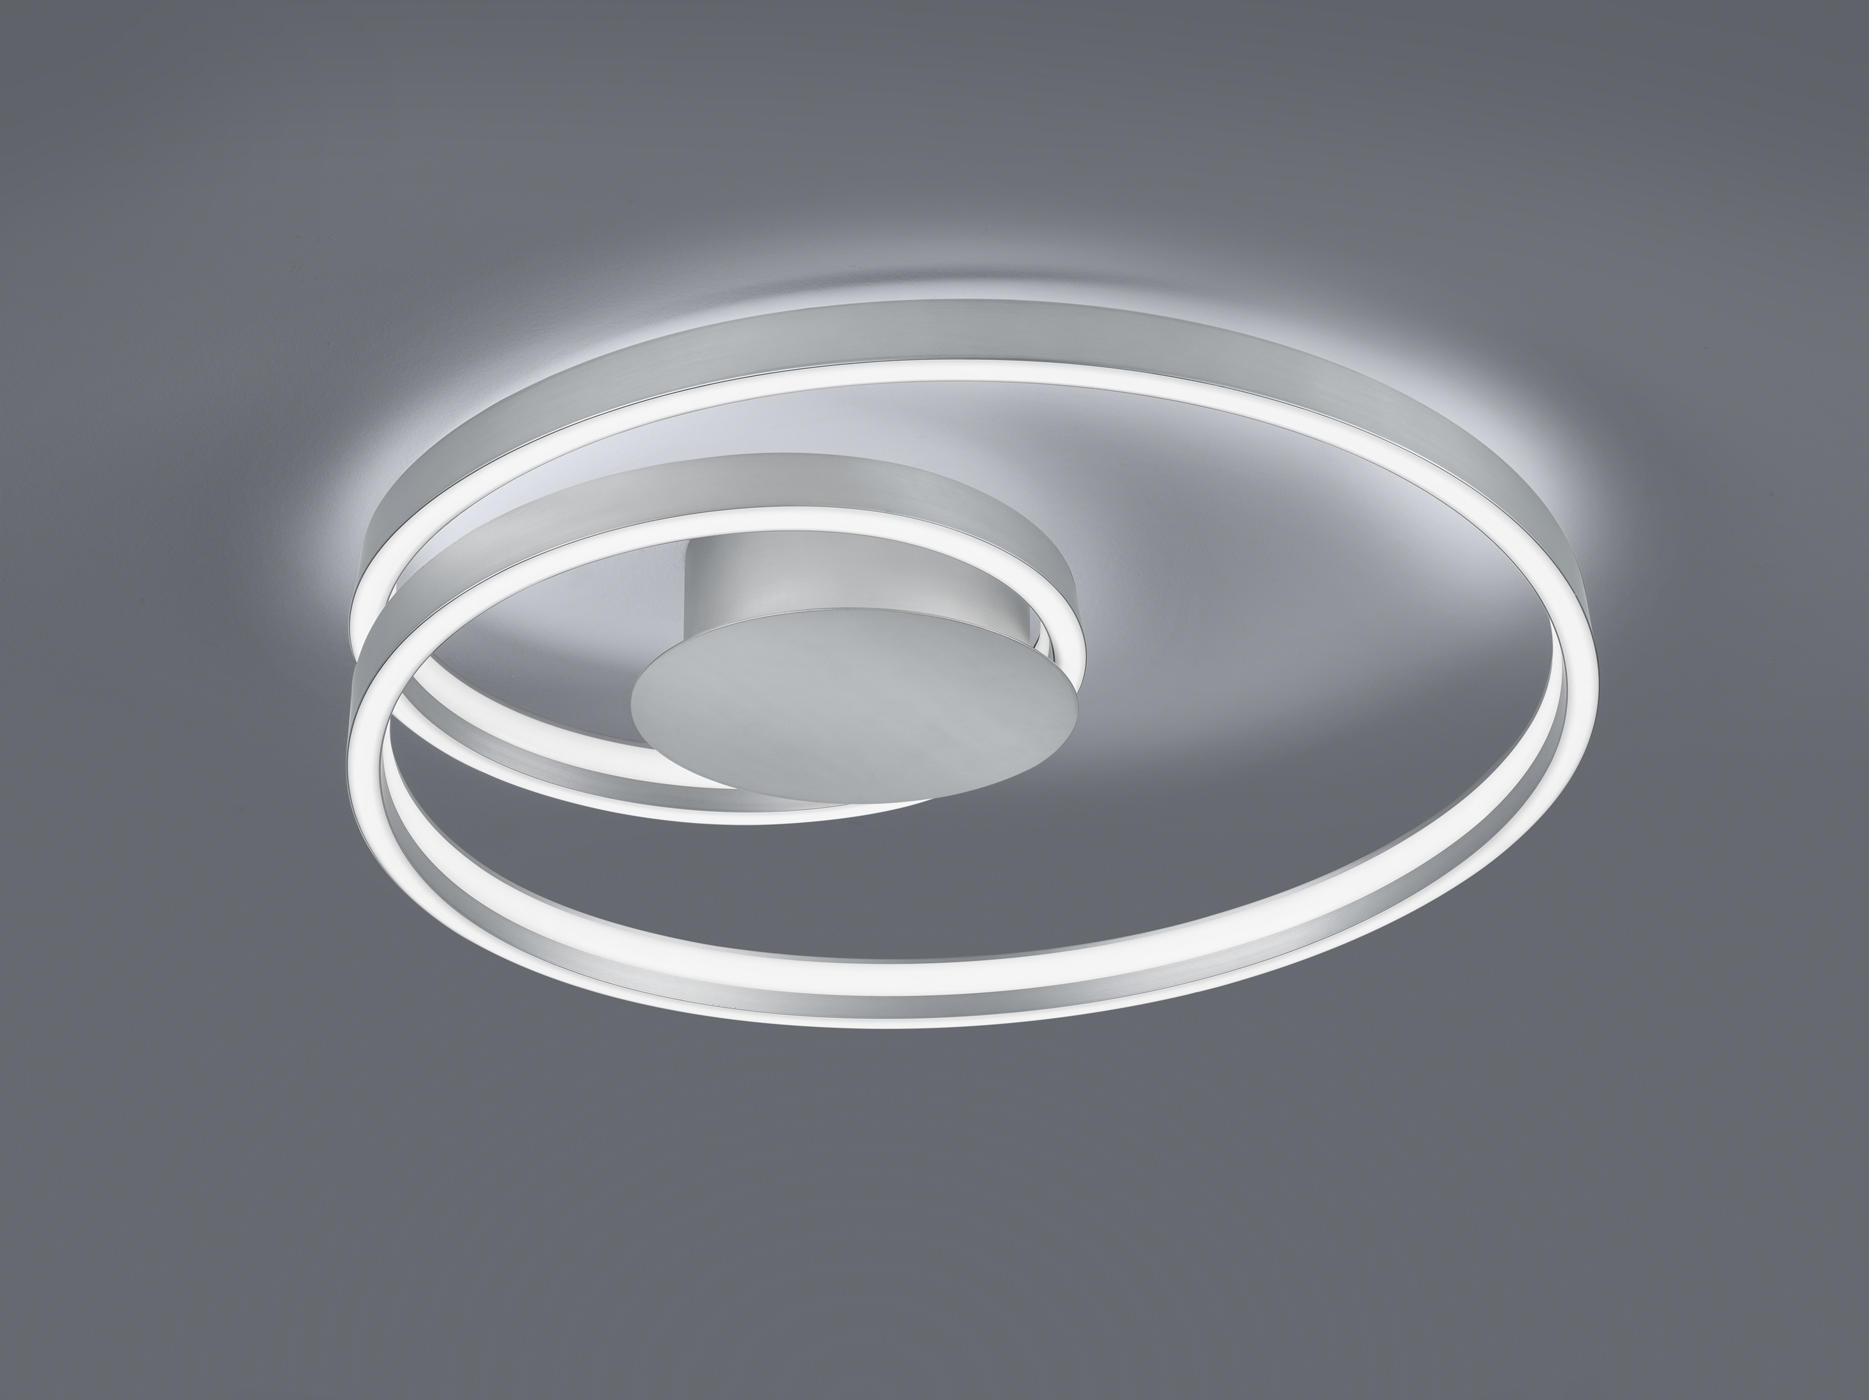 LED-DECKENLEUCHTE CINQUE  - Weiß/Nickelfarben, Design, Kunststoff/Metall (72/12cm) - Cinque